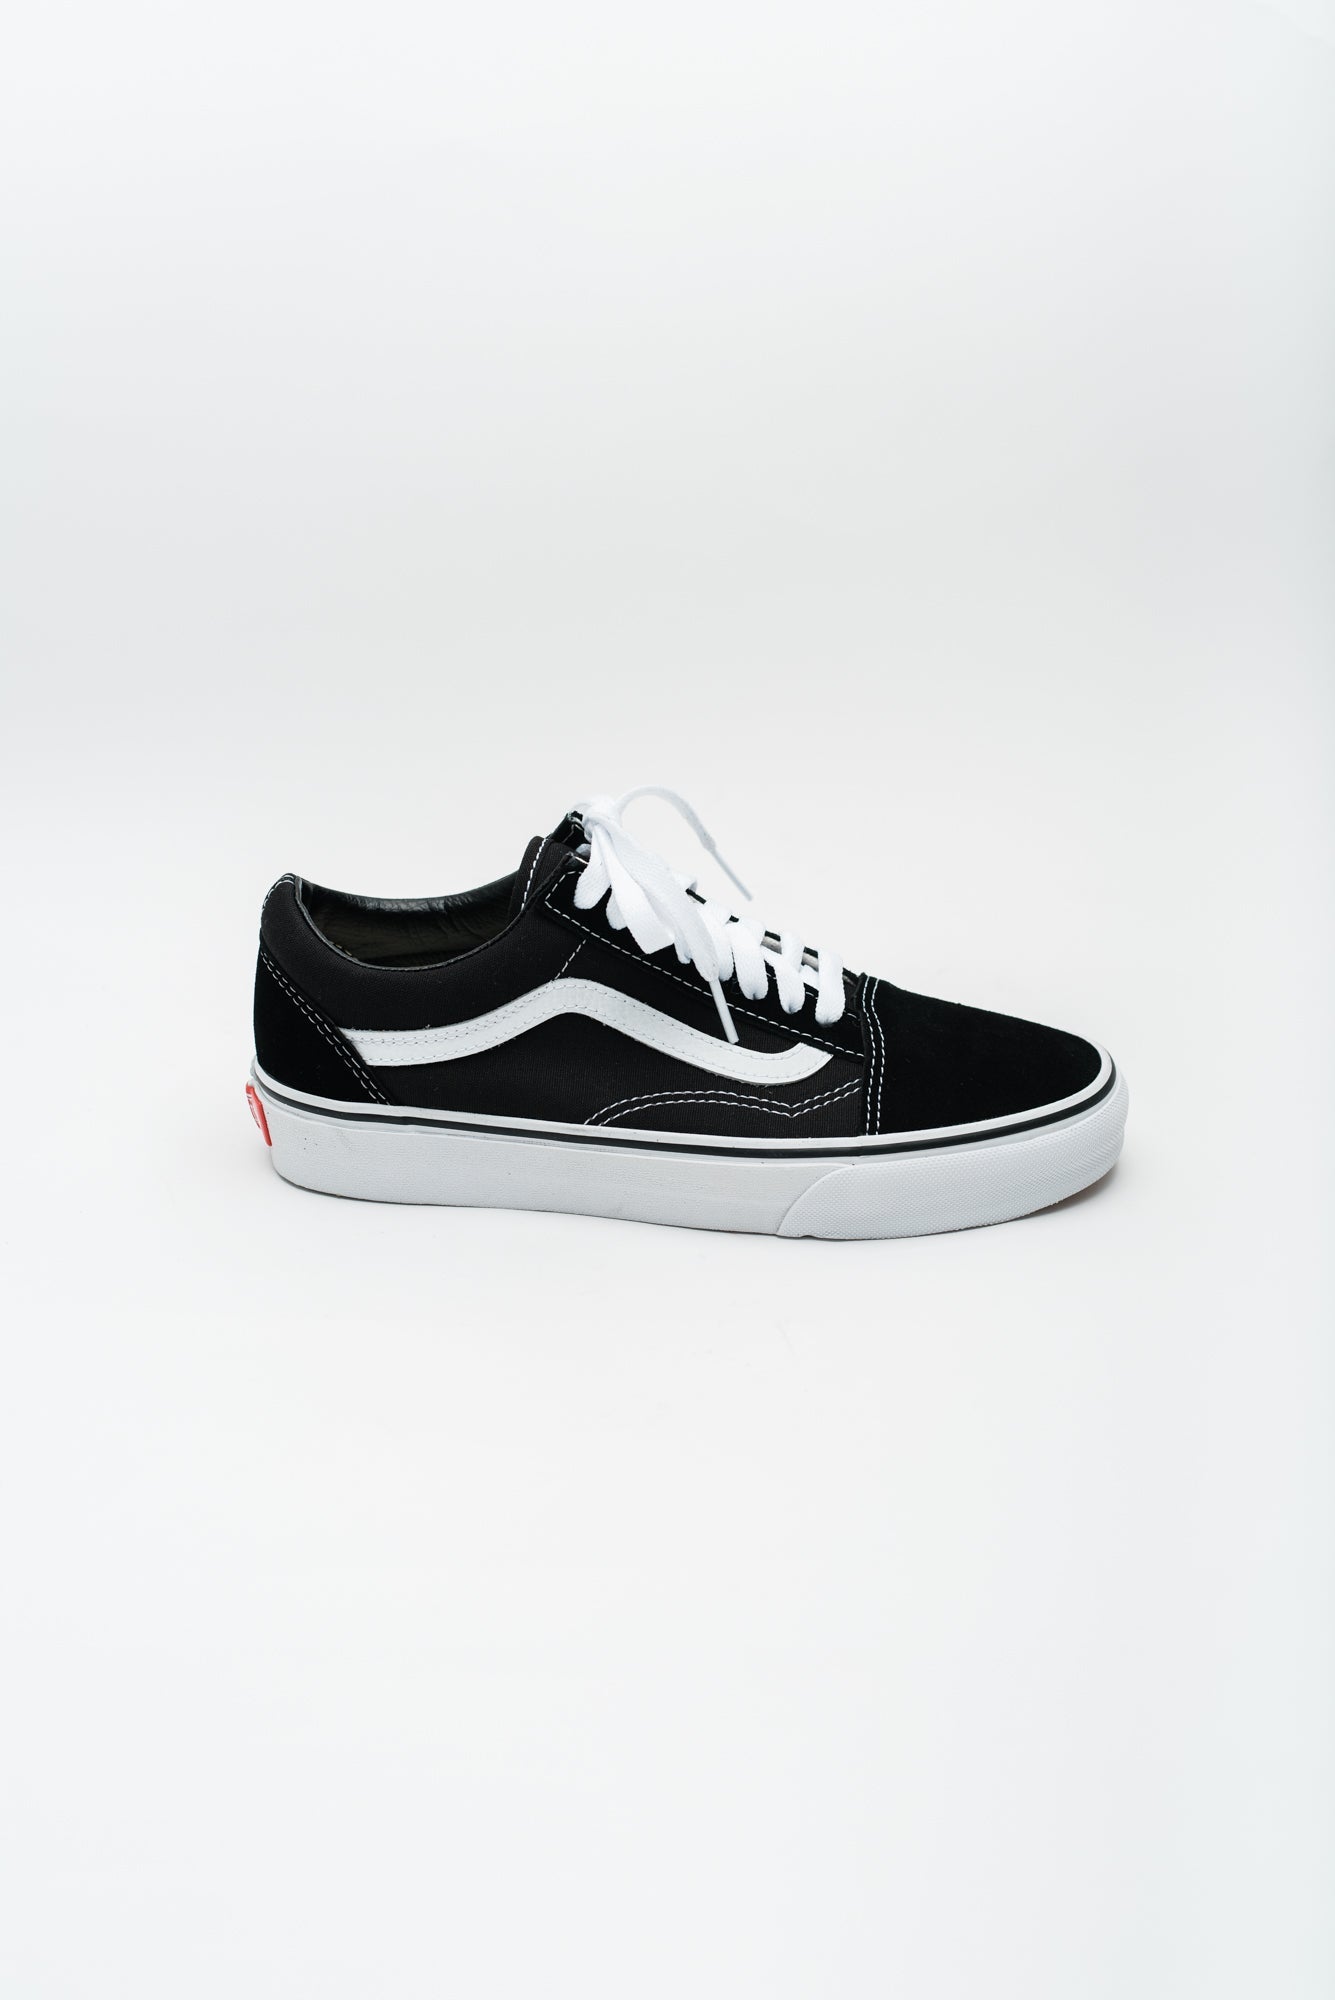 Load image into Gallery viewer, Vans Men&amp;#39;s Old Skool Sneaker - Black/White
